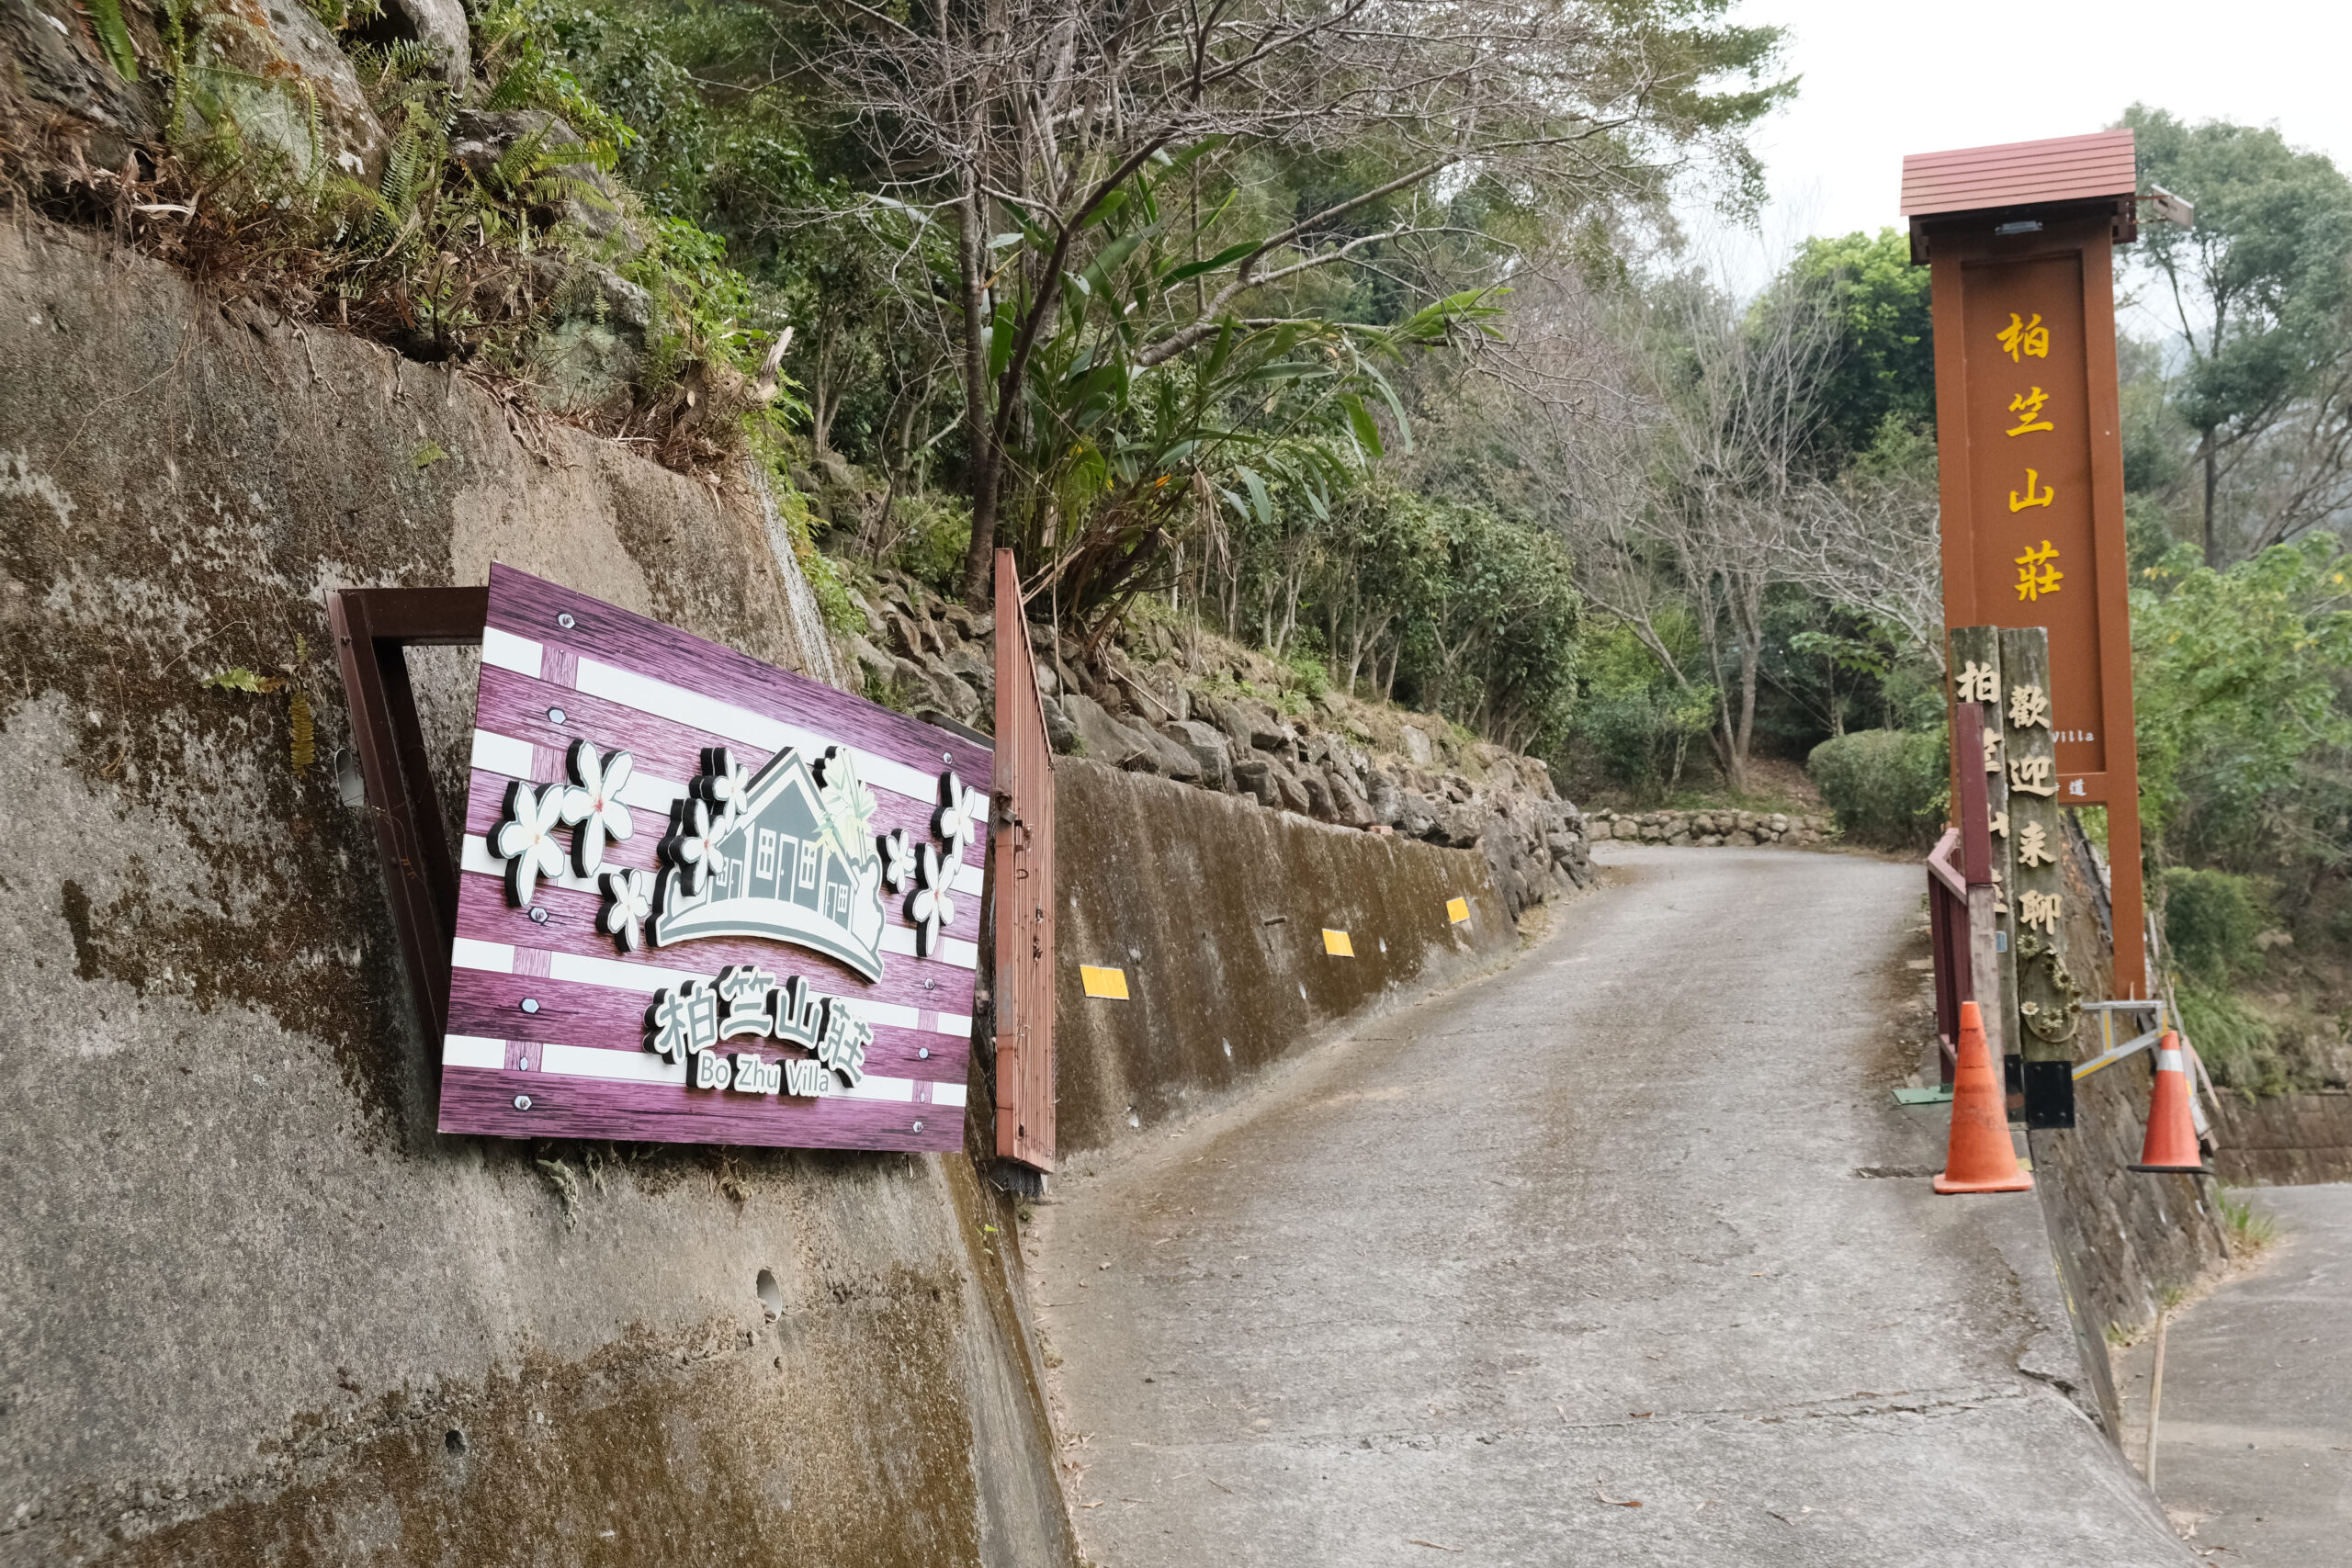 代表性景觀：柏竺山莊入口處，看到此招牌就知道抵達園區。